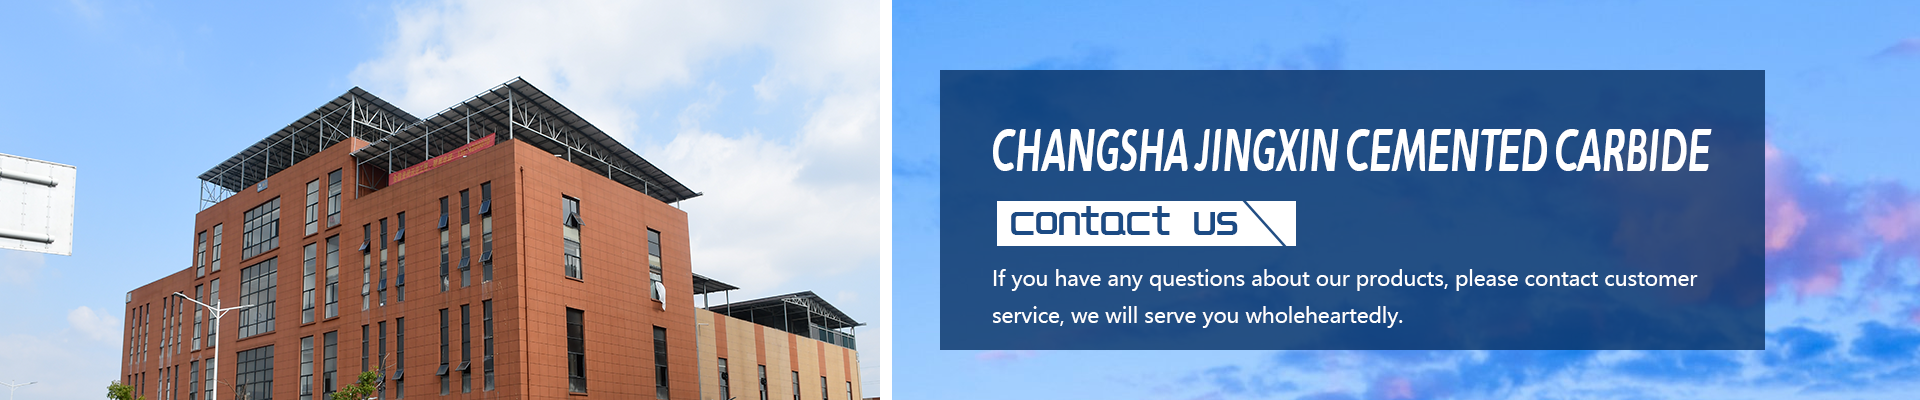 Changsha Jingxin Cemented Carbide Co., Ltd.